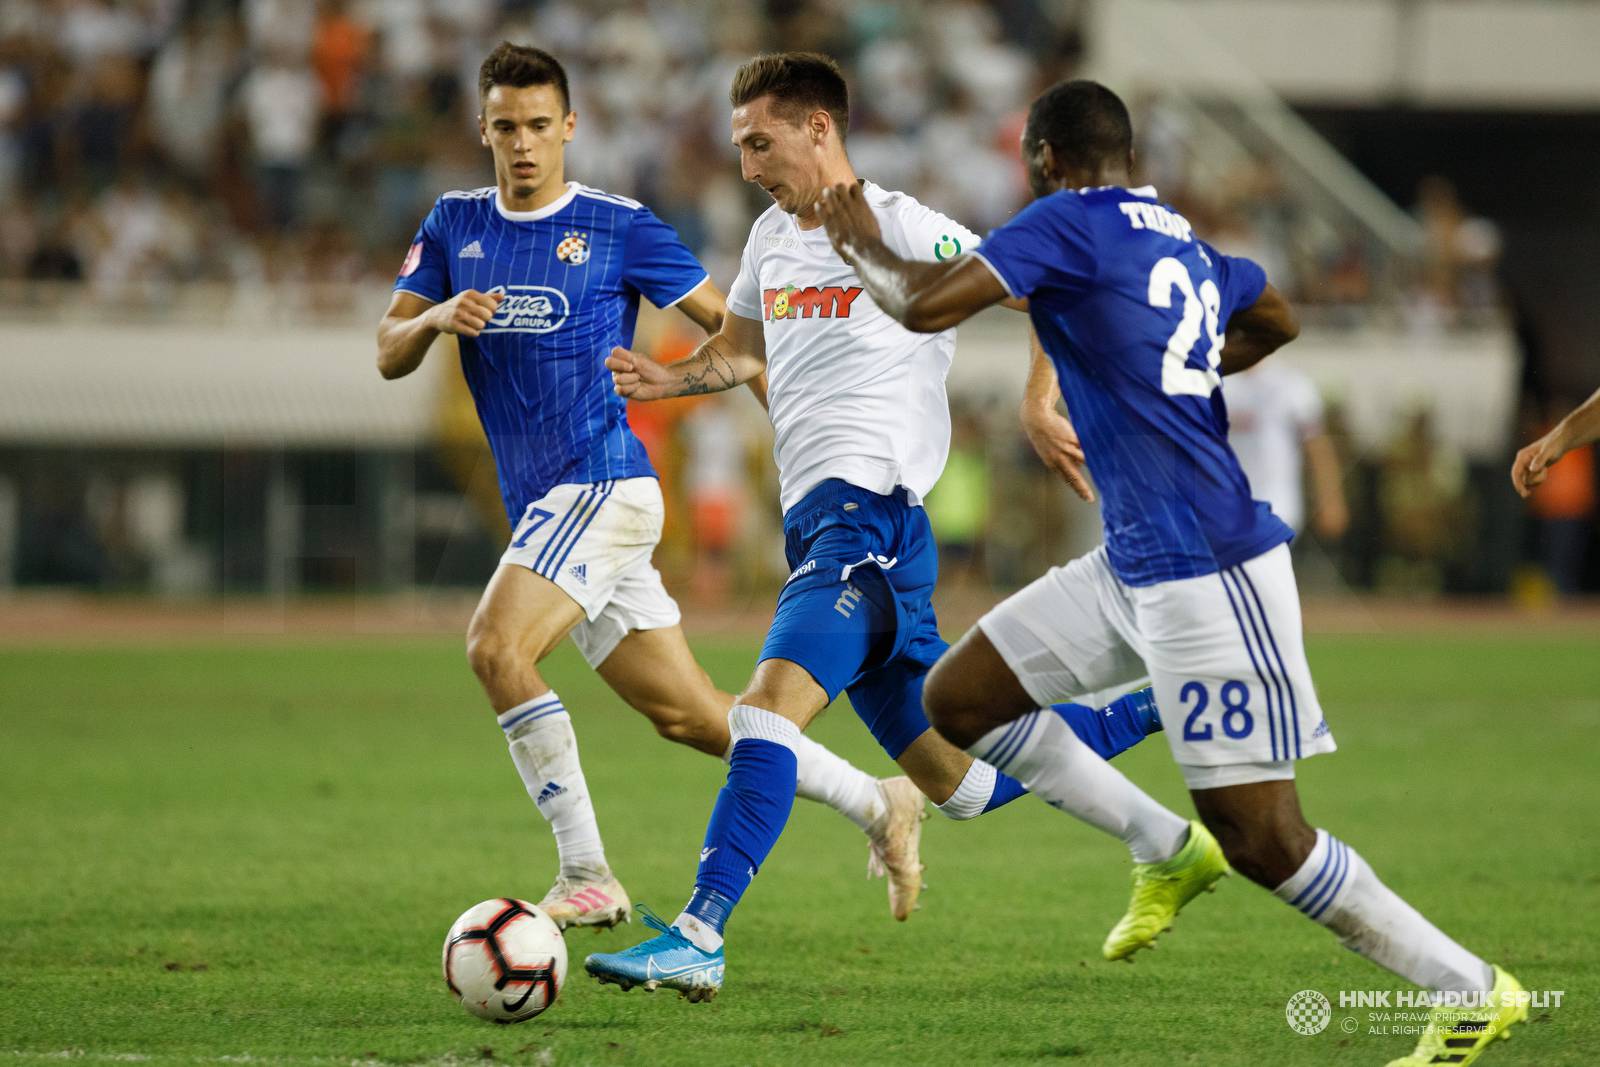 'Potajno sam se nadao povratku na Poljud, ali Hajduku ništa ne zamjeram, želim da uzmu trofej'